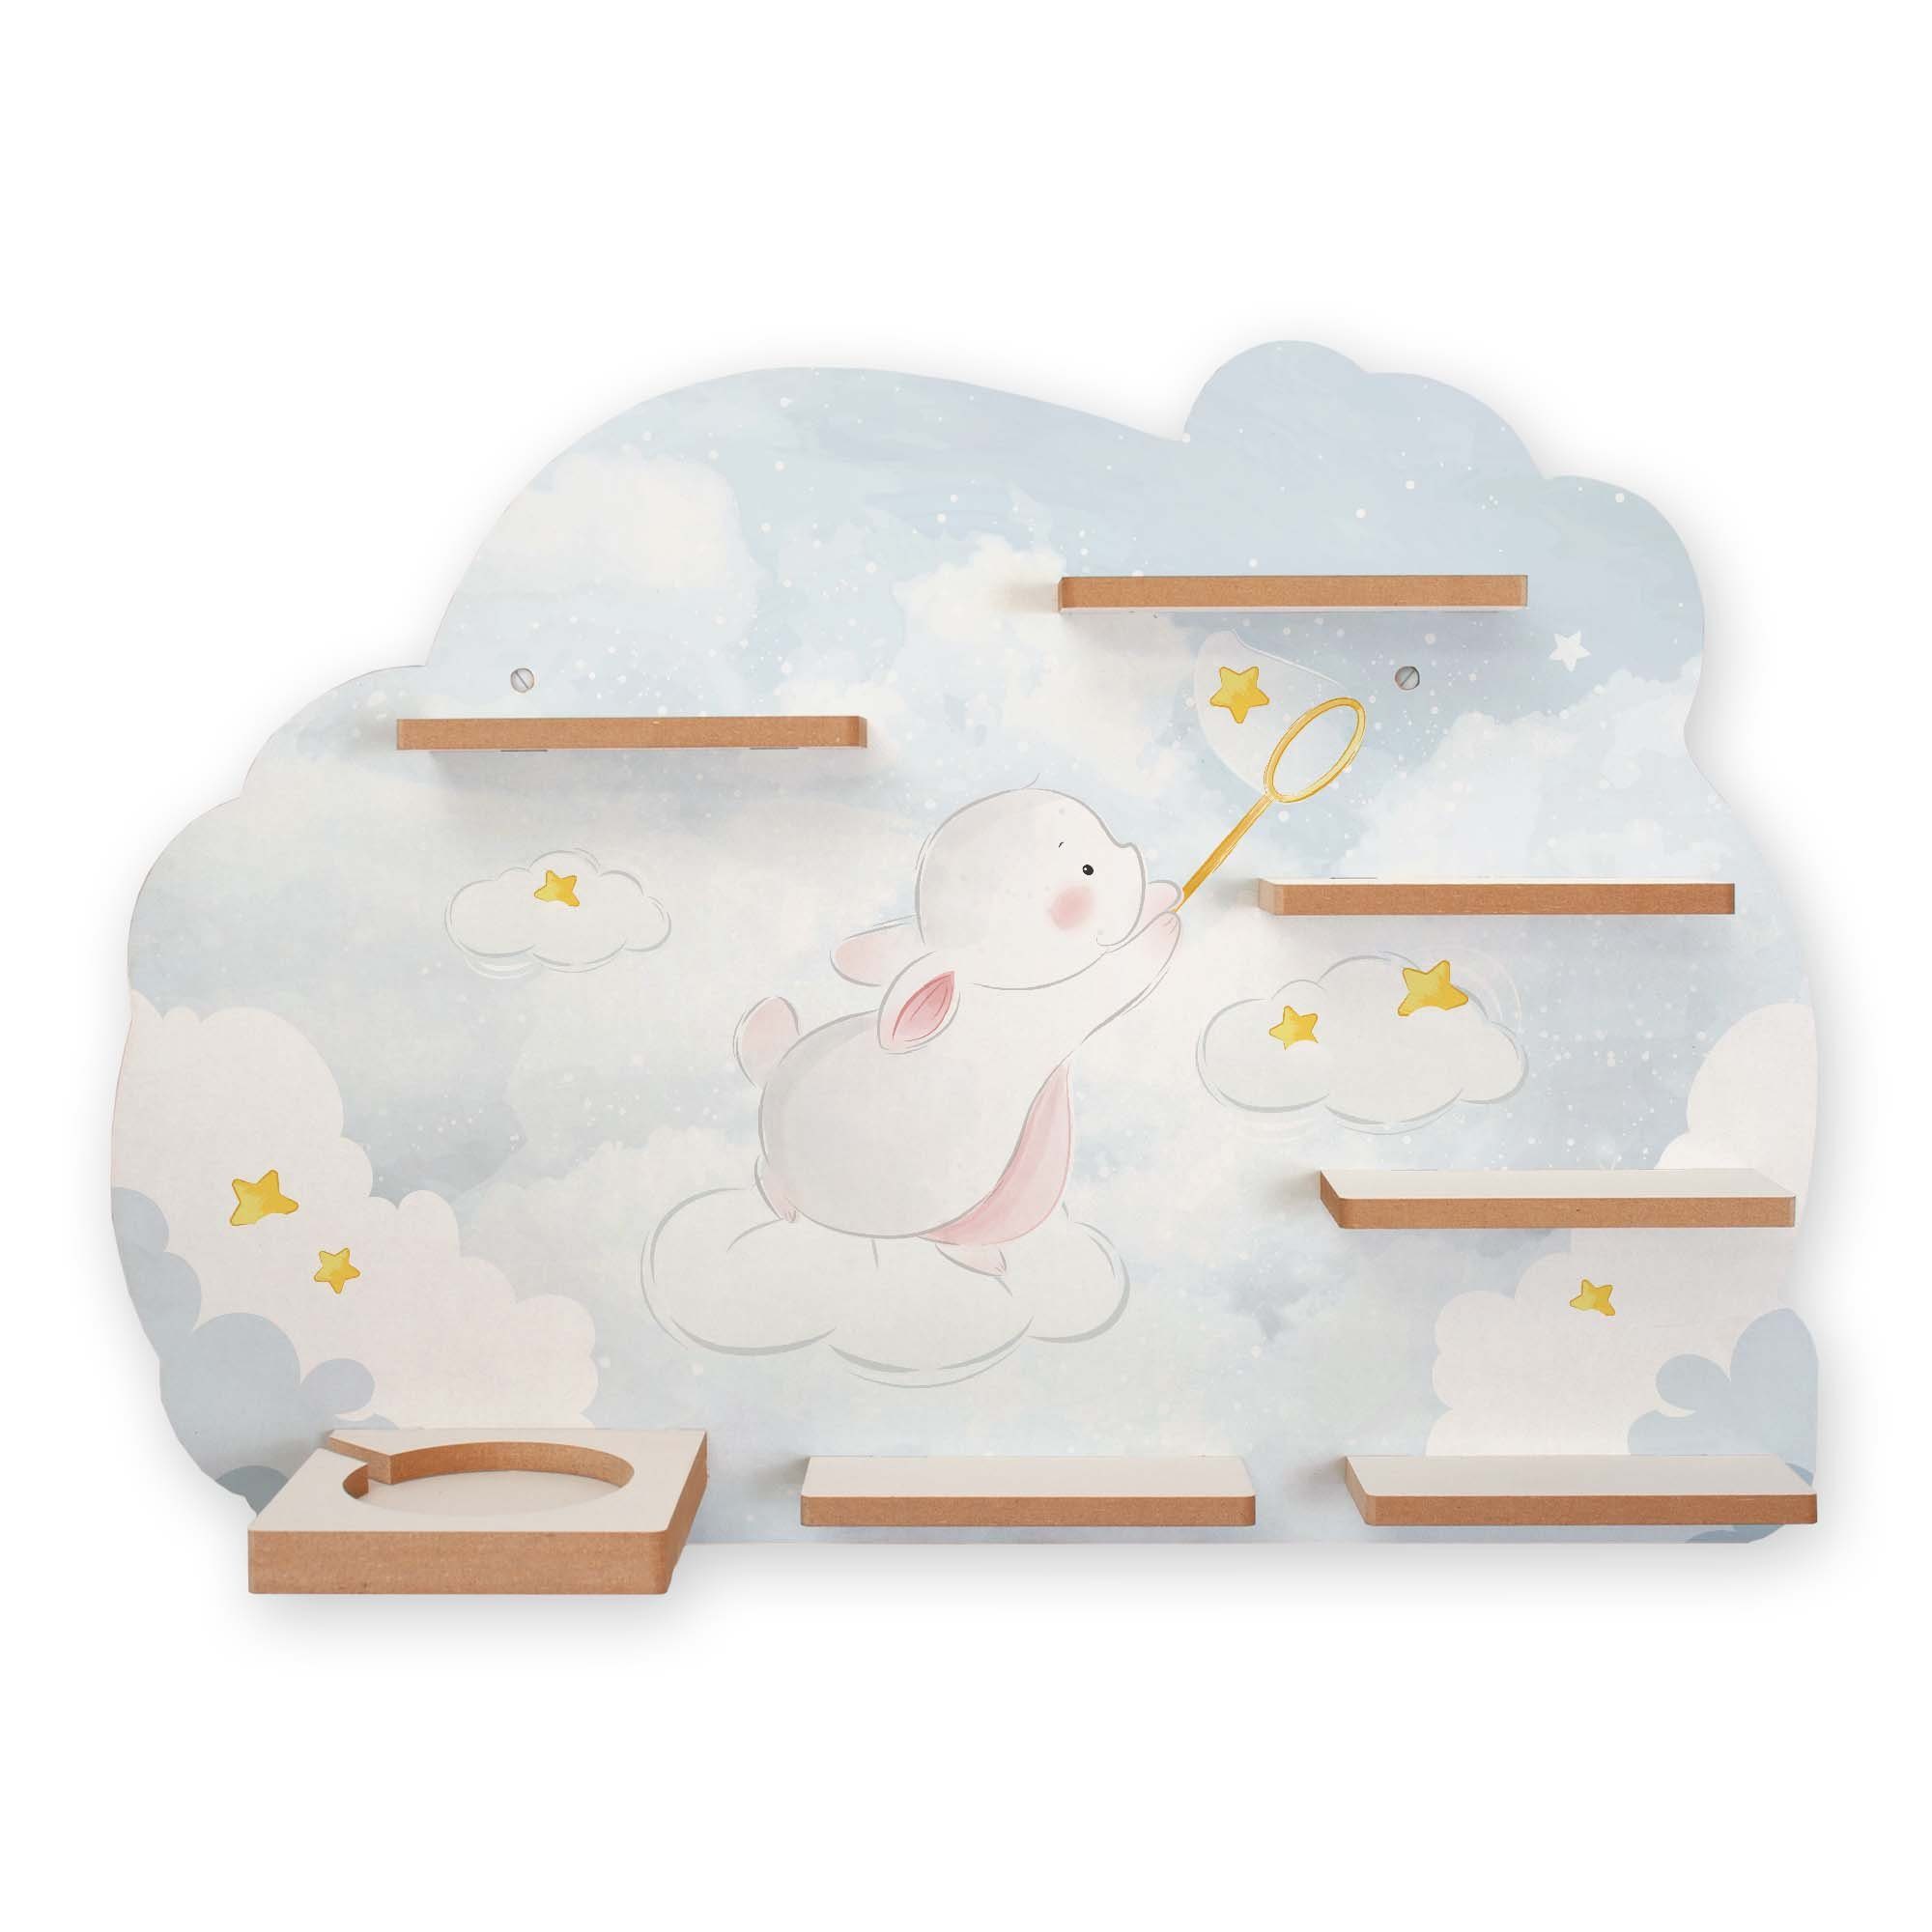 Kreative Feder Wandregal »Sternensammler«, Kinder-Regal geeignet für Tonie  Box und Tonies, magnetische Haftung für Musikbox-Figuren, aus MDF, Größe  ca. 59 x 41 cm online kaufen | OTTO